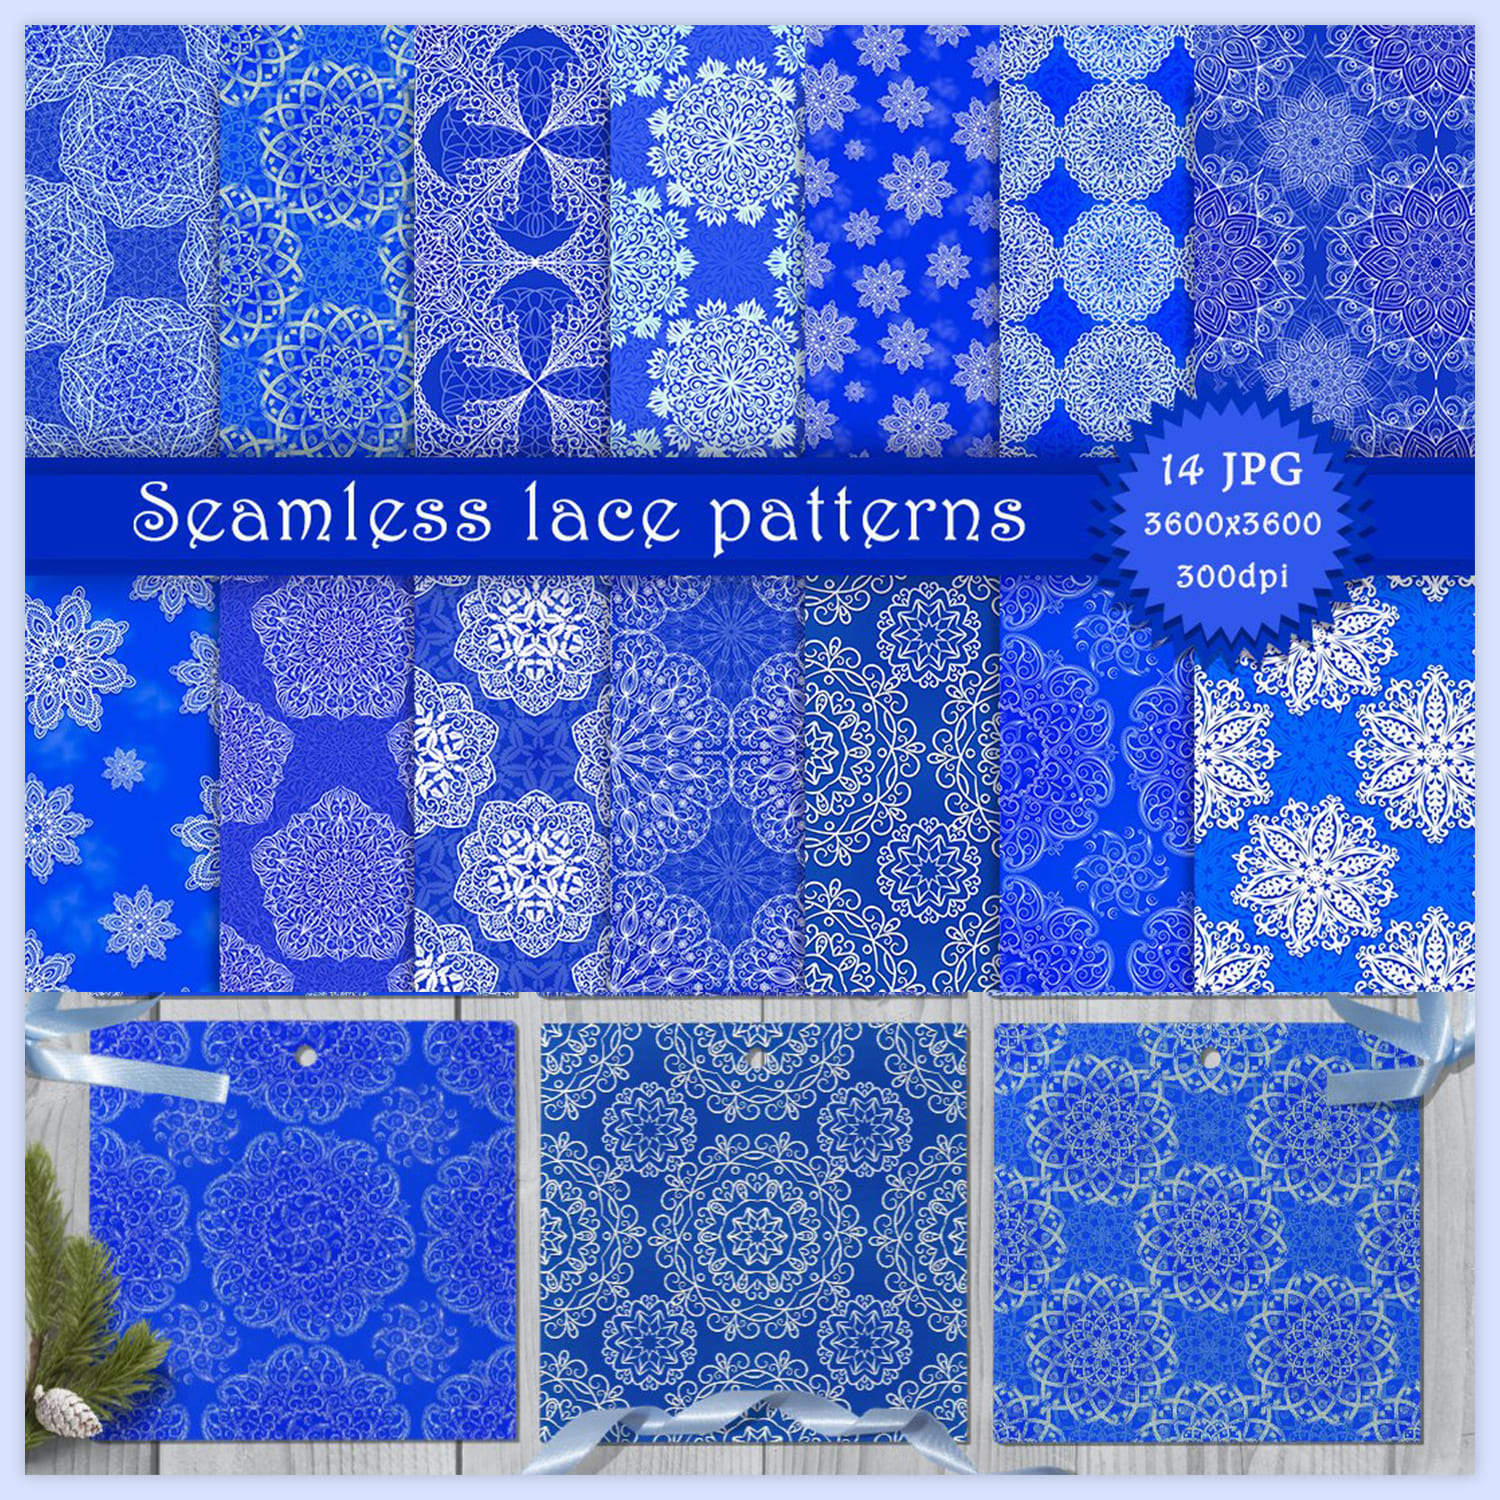 Seamless Lace Patterns.